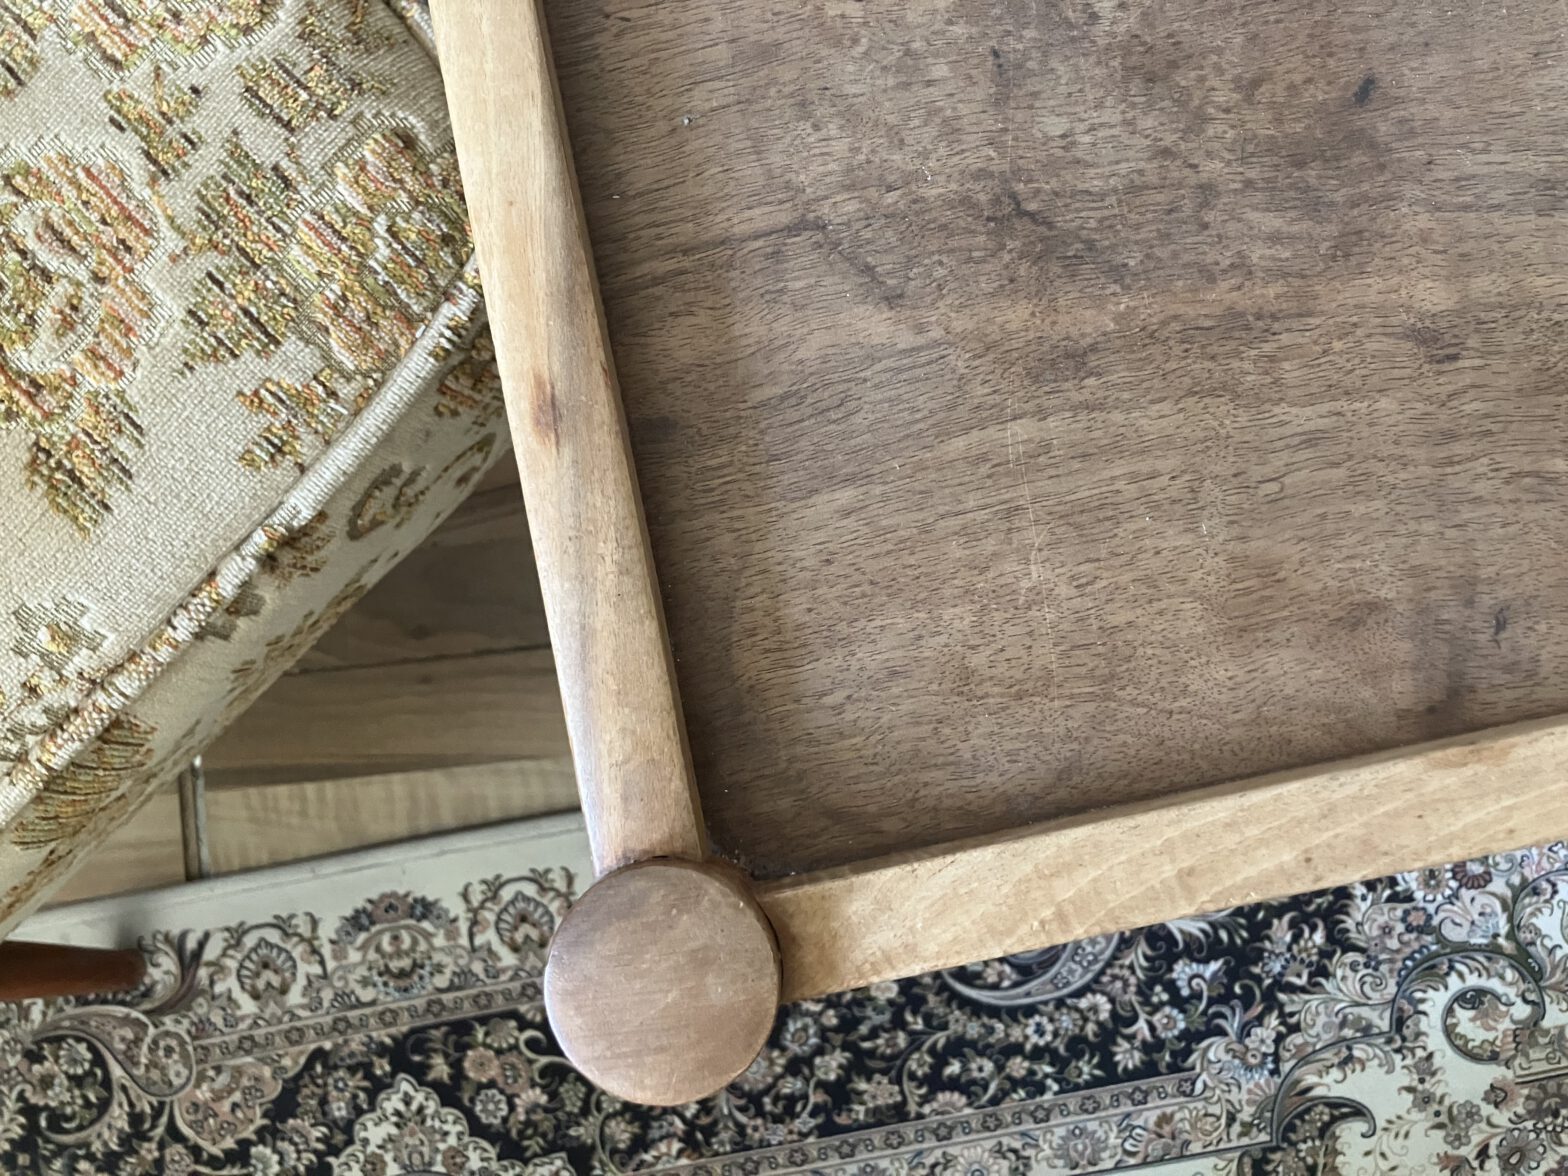 Teil einer Ecke eines Holztisches, daneben ein Polsterausschnitt eines Sessels, dunkle Töne, unten drunter ein Teil eines Teppichs mit Paisley Muster